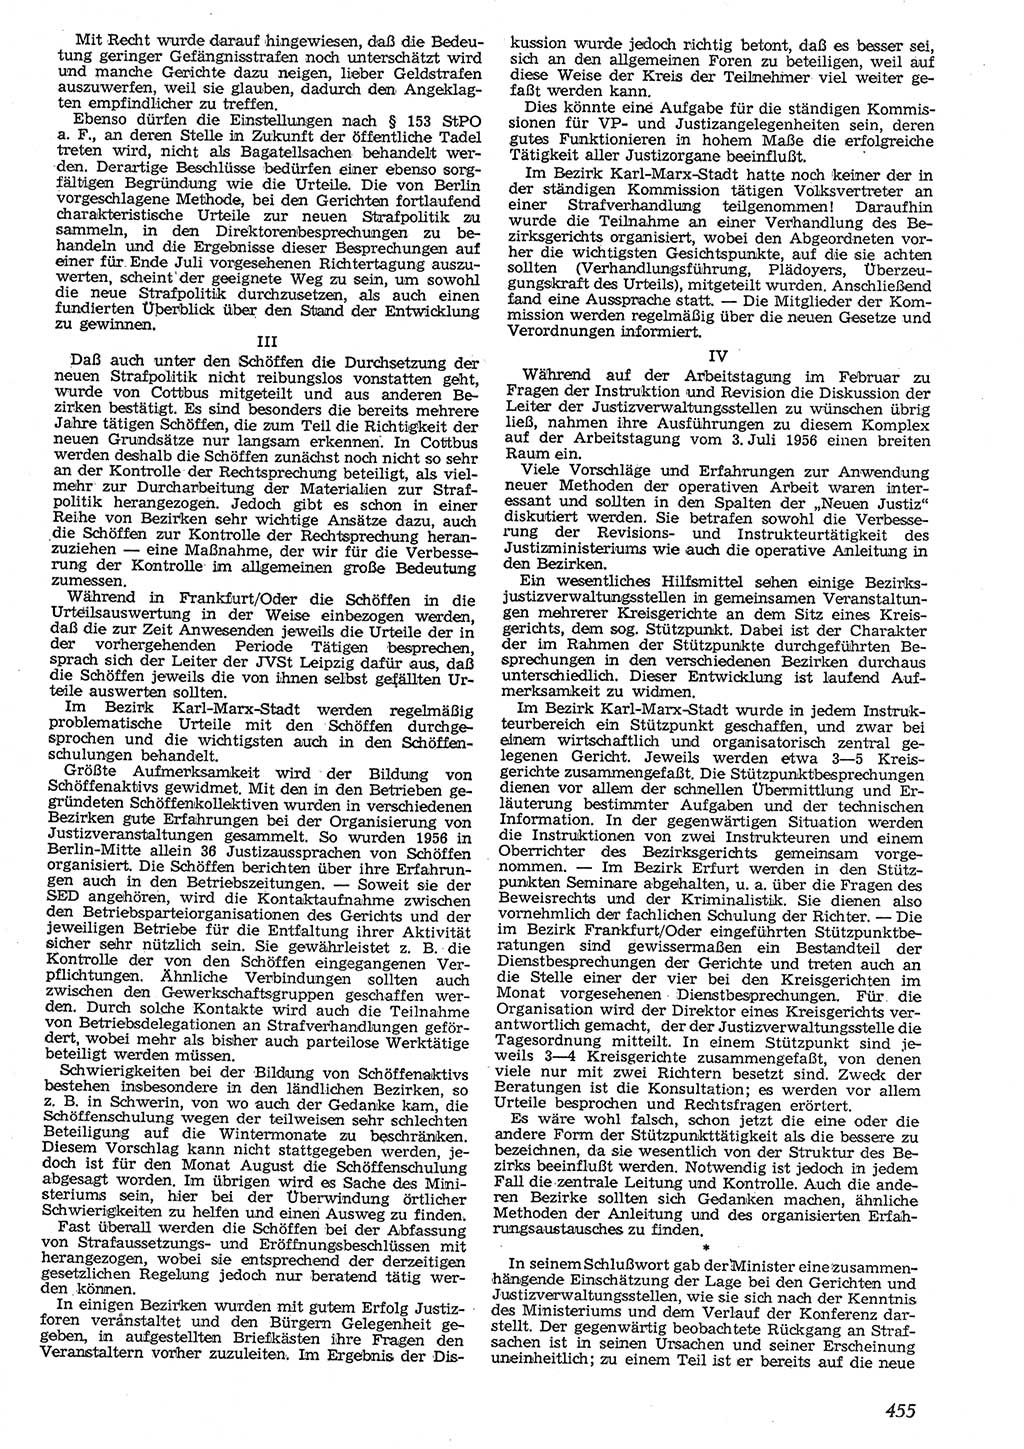 Neue Justiz (NJ), Zeitschrift für Recht und Rechtswissenschaft [Deutsche Demokratische Republik (DDR)], 10. Jahrgang 1956, Seite 455 (NJ DDR 1956, S. 455)